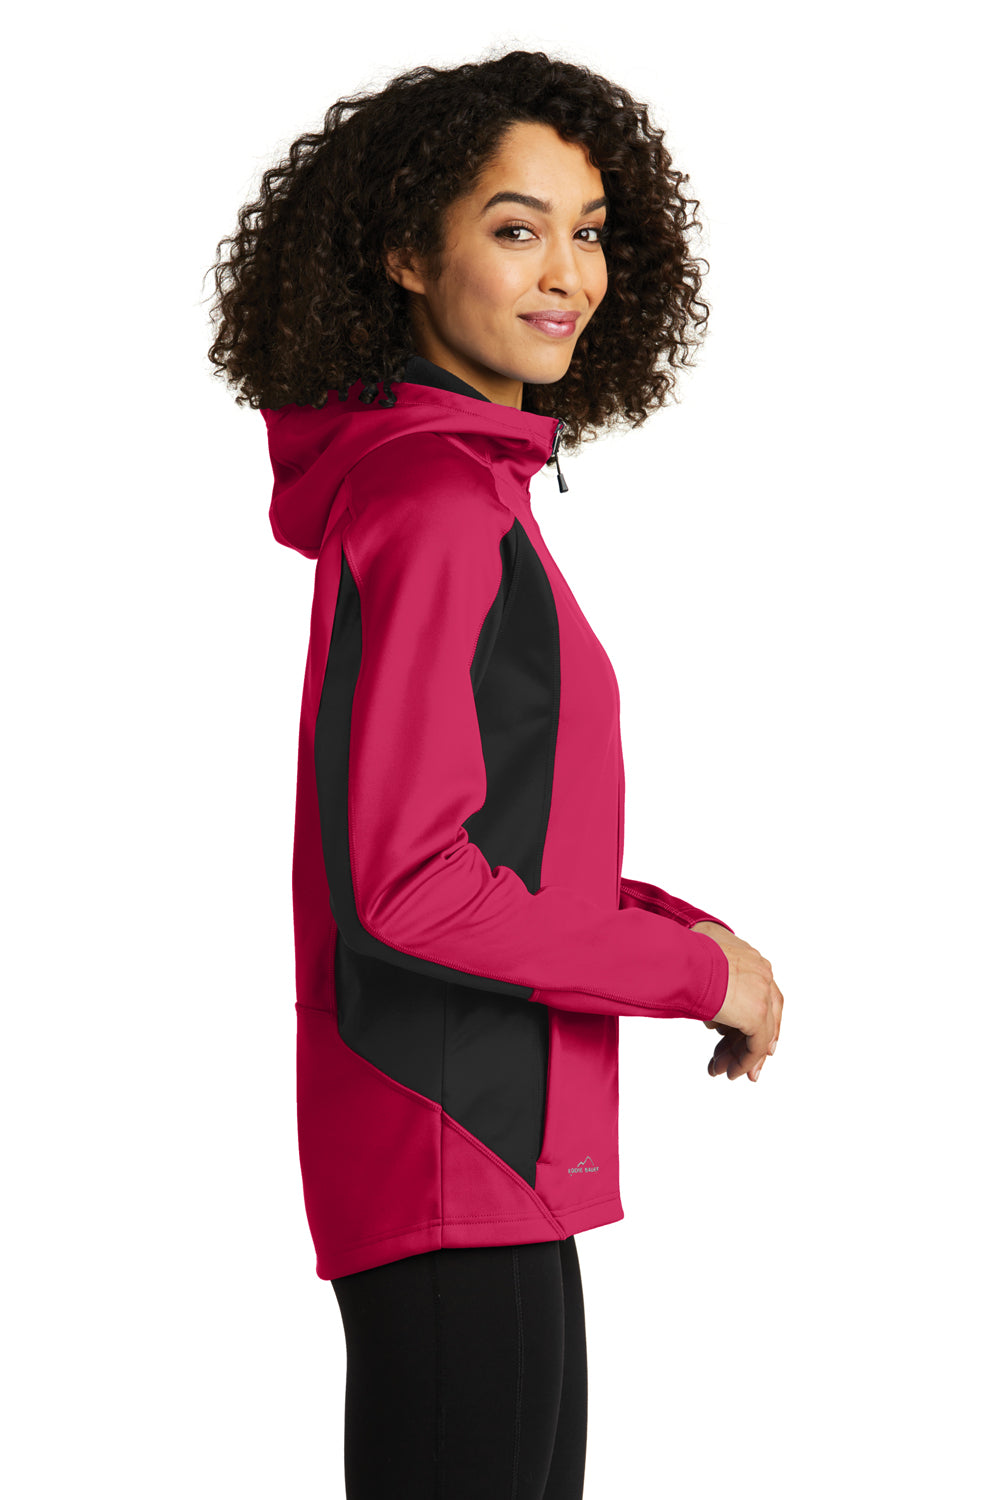 Eddie Bauer EB543 Womens Trail Water Resistant Full Zip Hooded Jacket Lotus Pink/Steel Grey Side